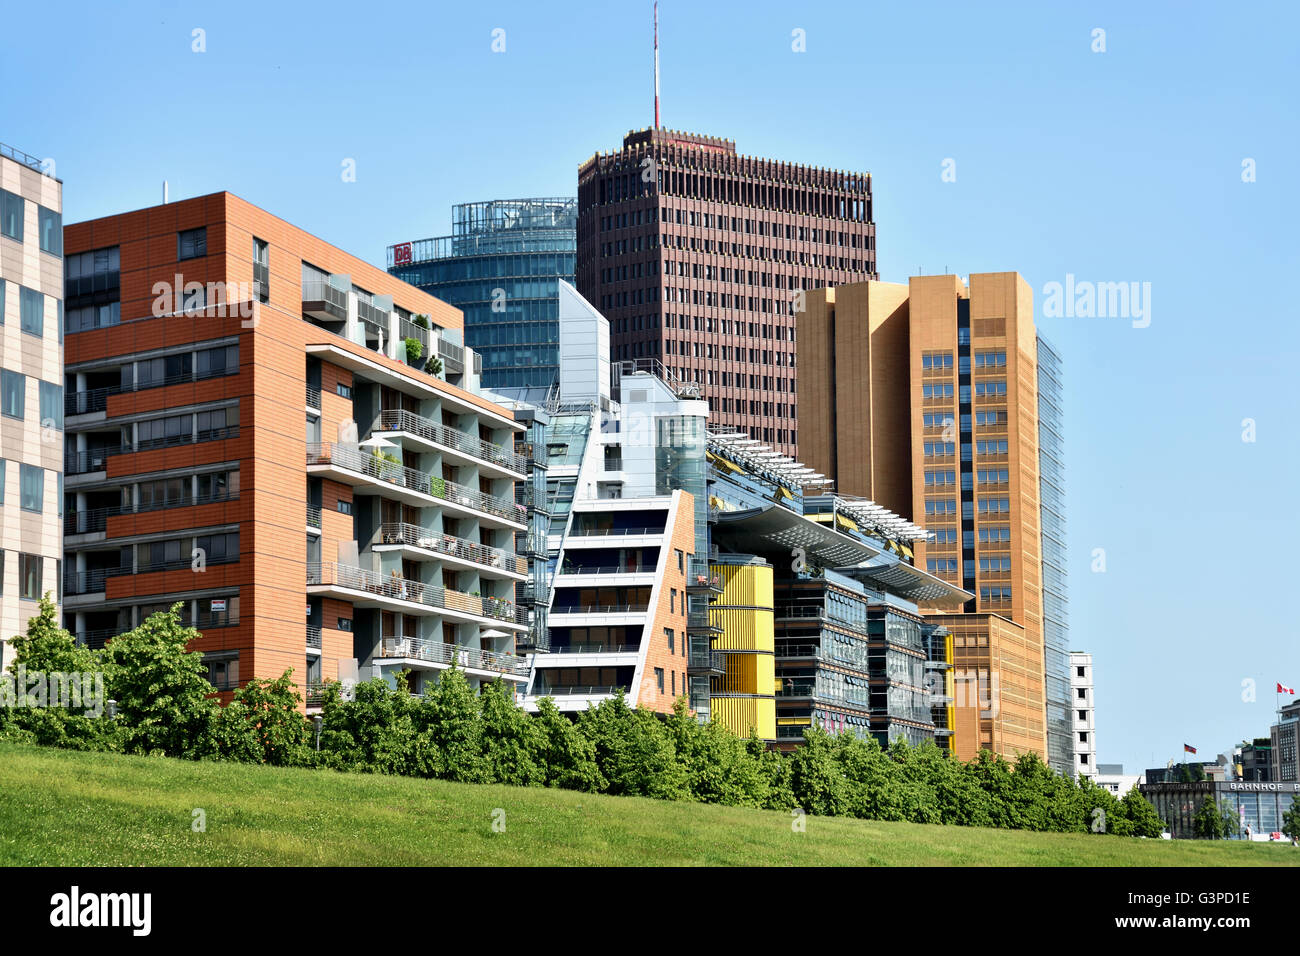 La moderna architettura di appartamenti e uffici presso la Daimler Chrysler Quartier a Potsdamer Platz - Piazza Potsdam in Germania Foto Stock